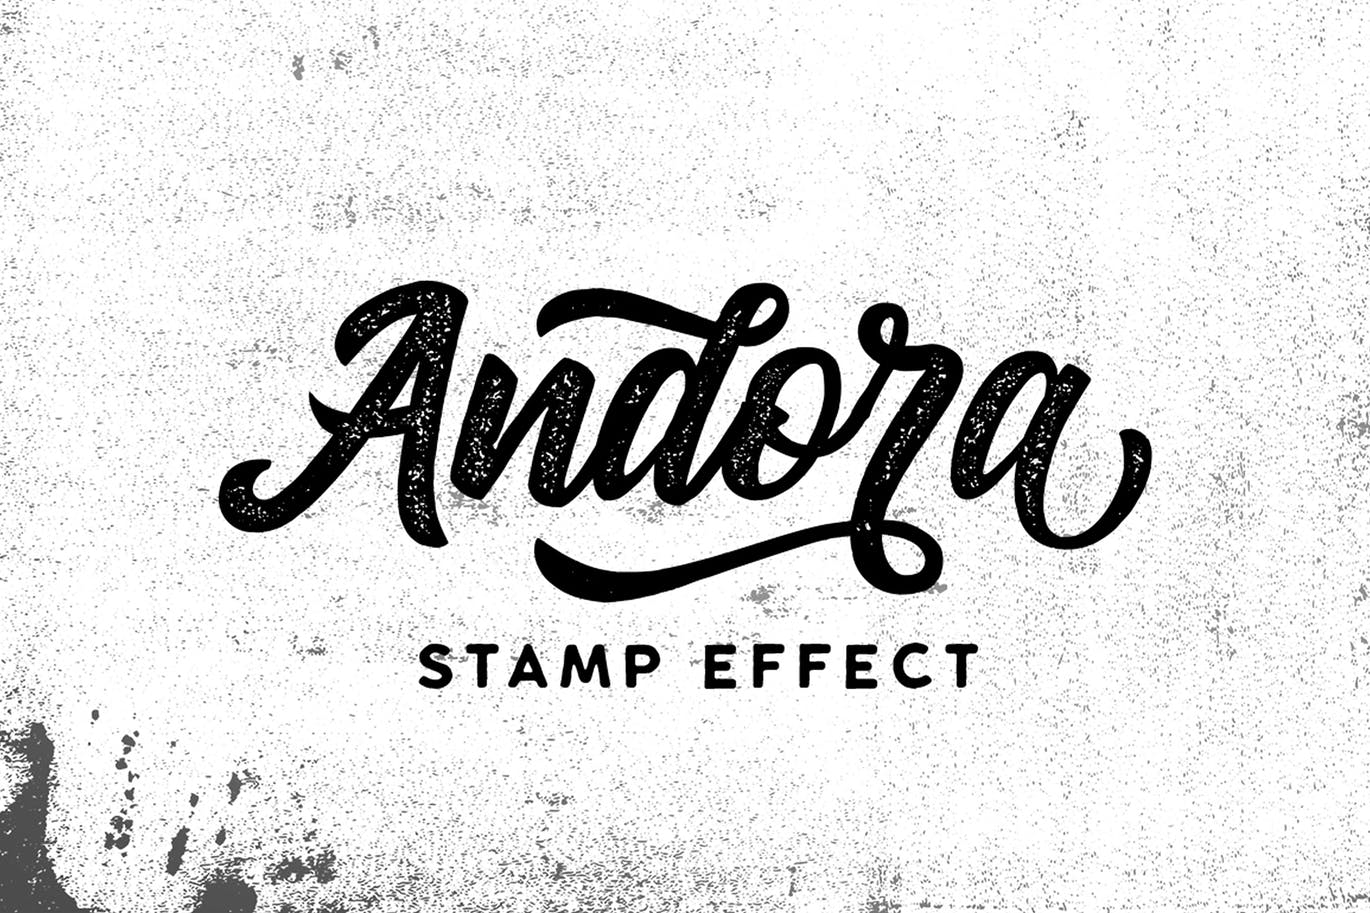 Andora a stam effect logo font